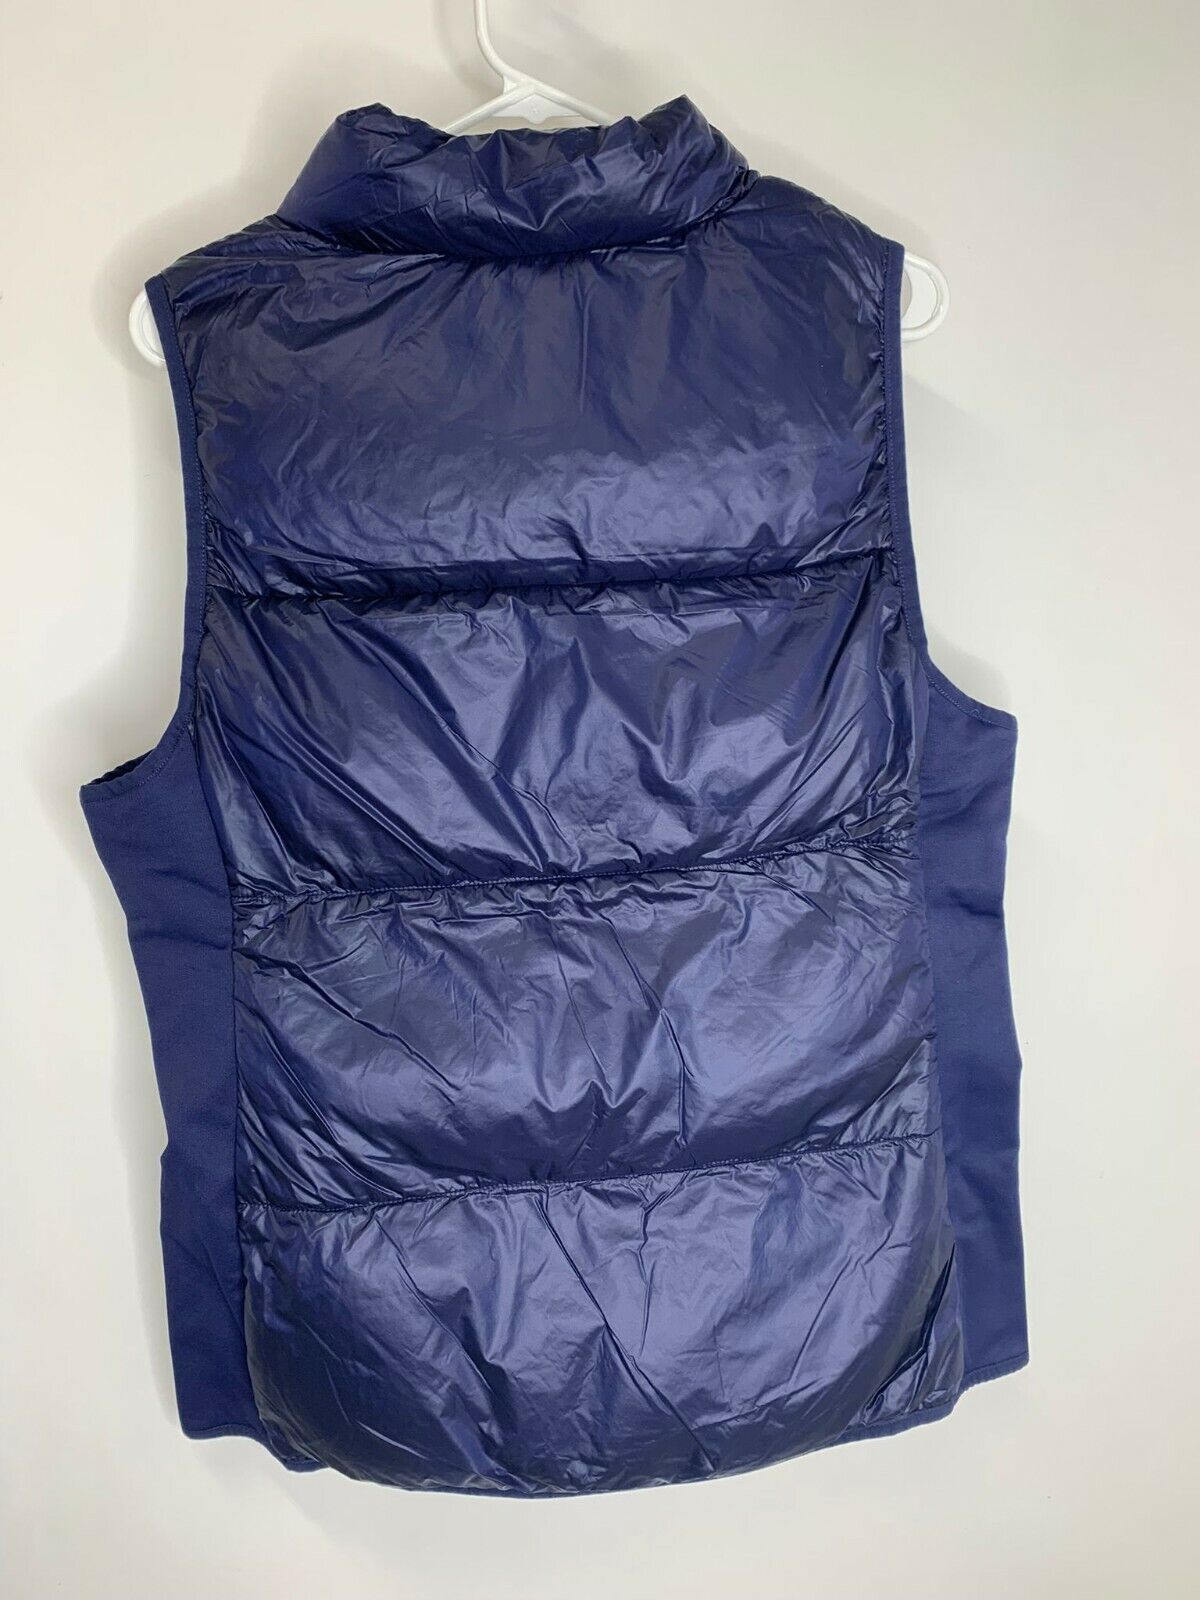 Fabletics Womens XL Elliot Packable Puffer Vest Zip Up Deep Navy Blue